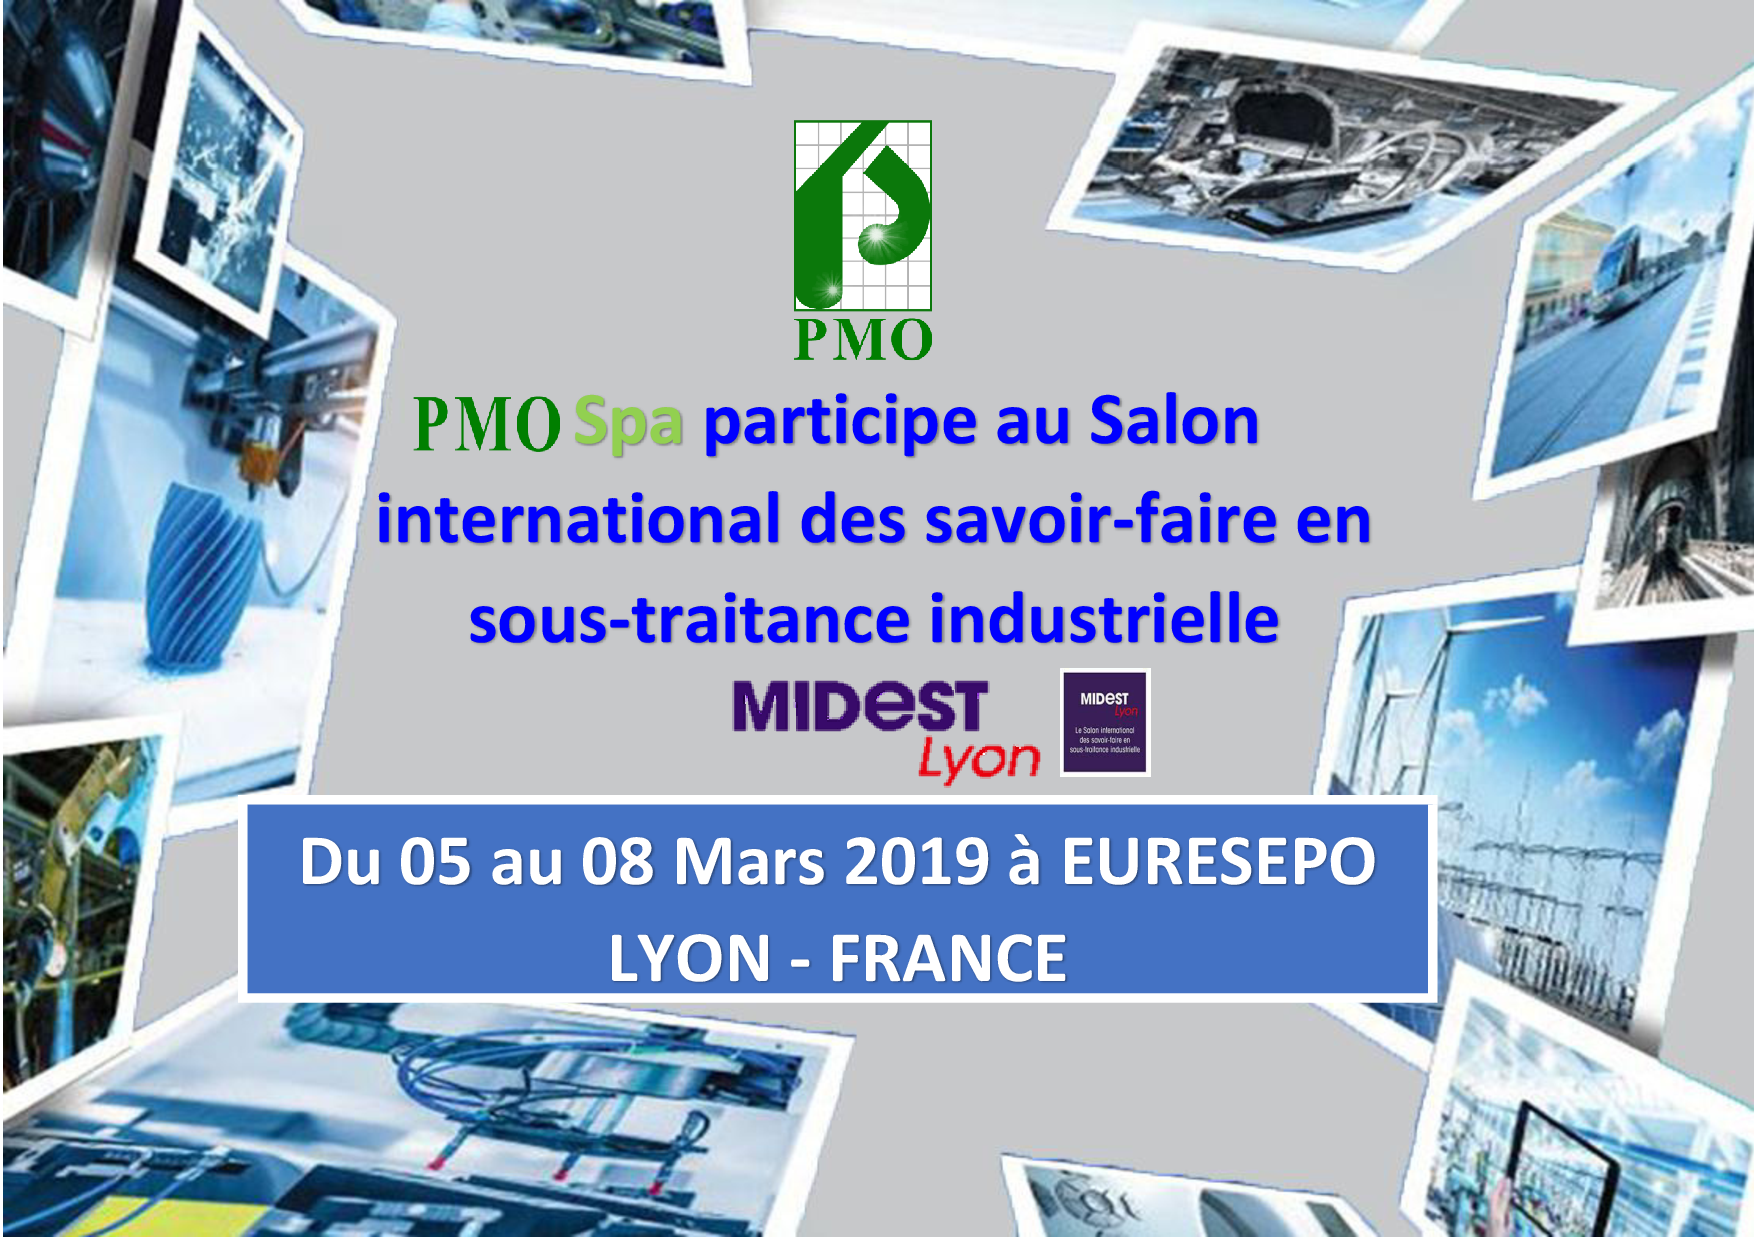 PMO participe au Salon international des savoir-faire en sous-traitance industrielle MIDEST 2019